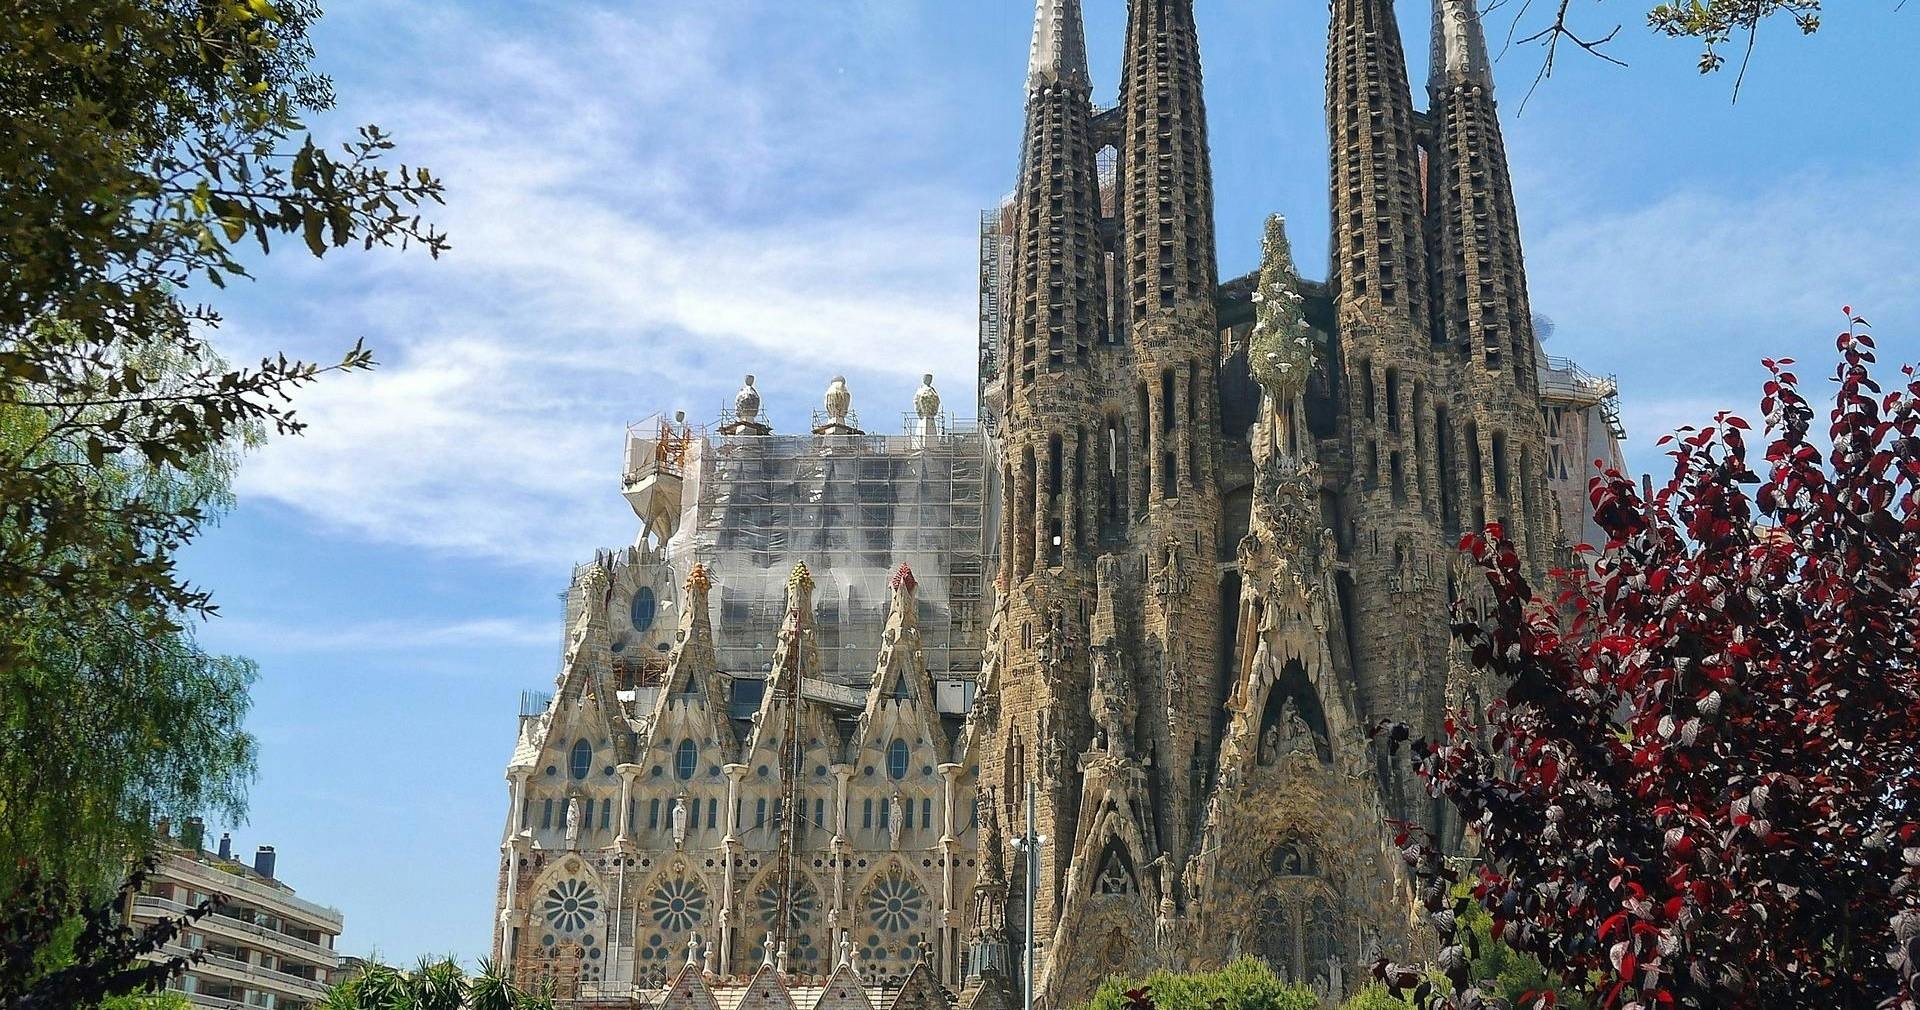 Visite guidée avec billet coupe-file pour la Sagrada Familia avec accès à la tour